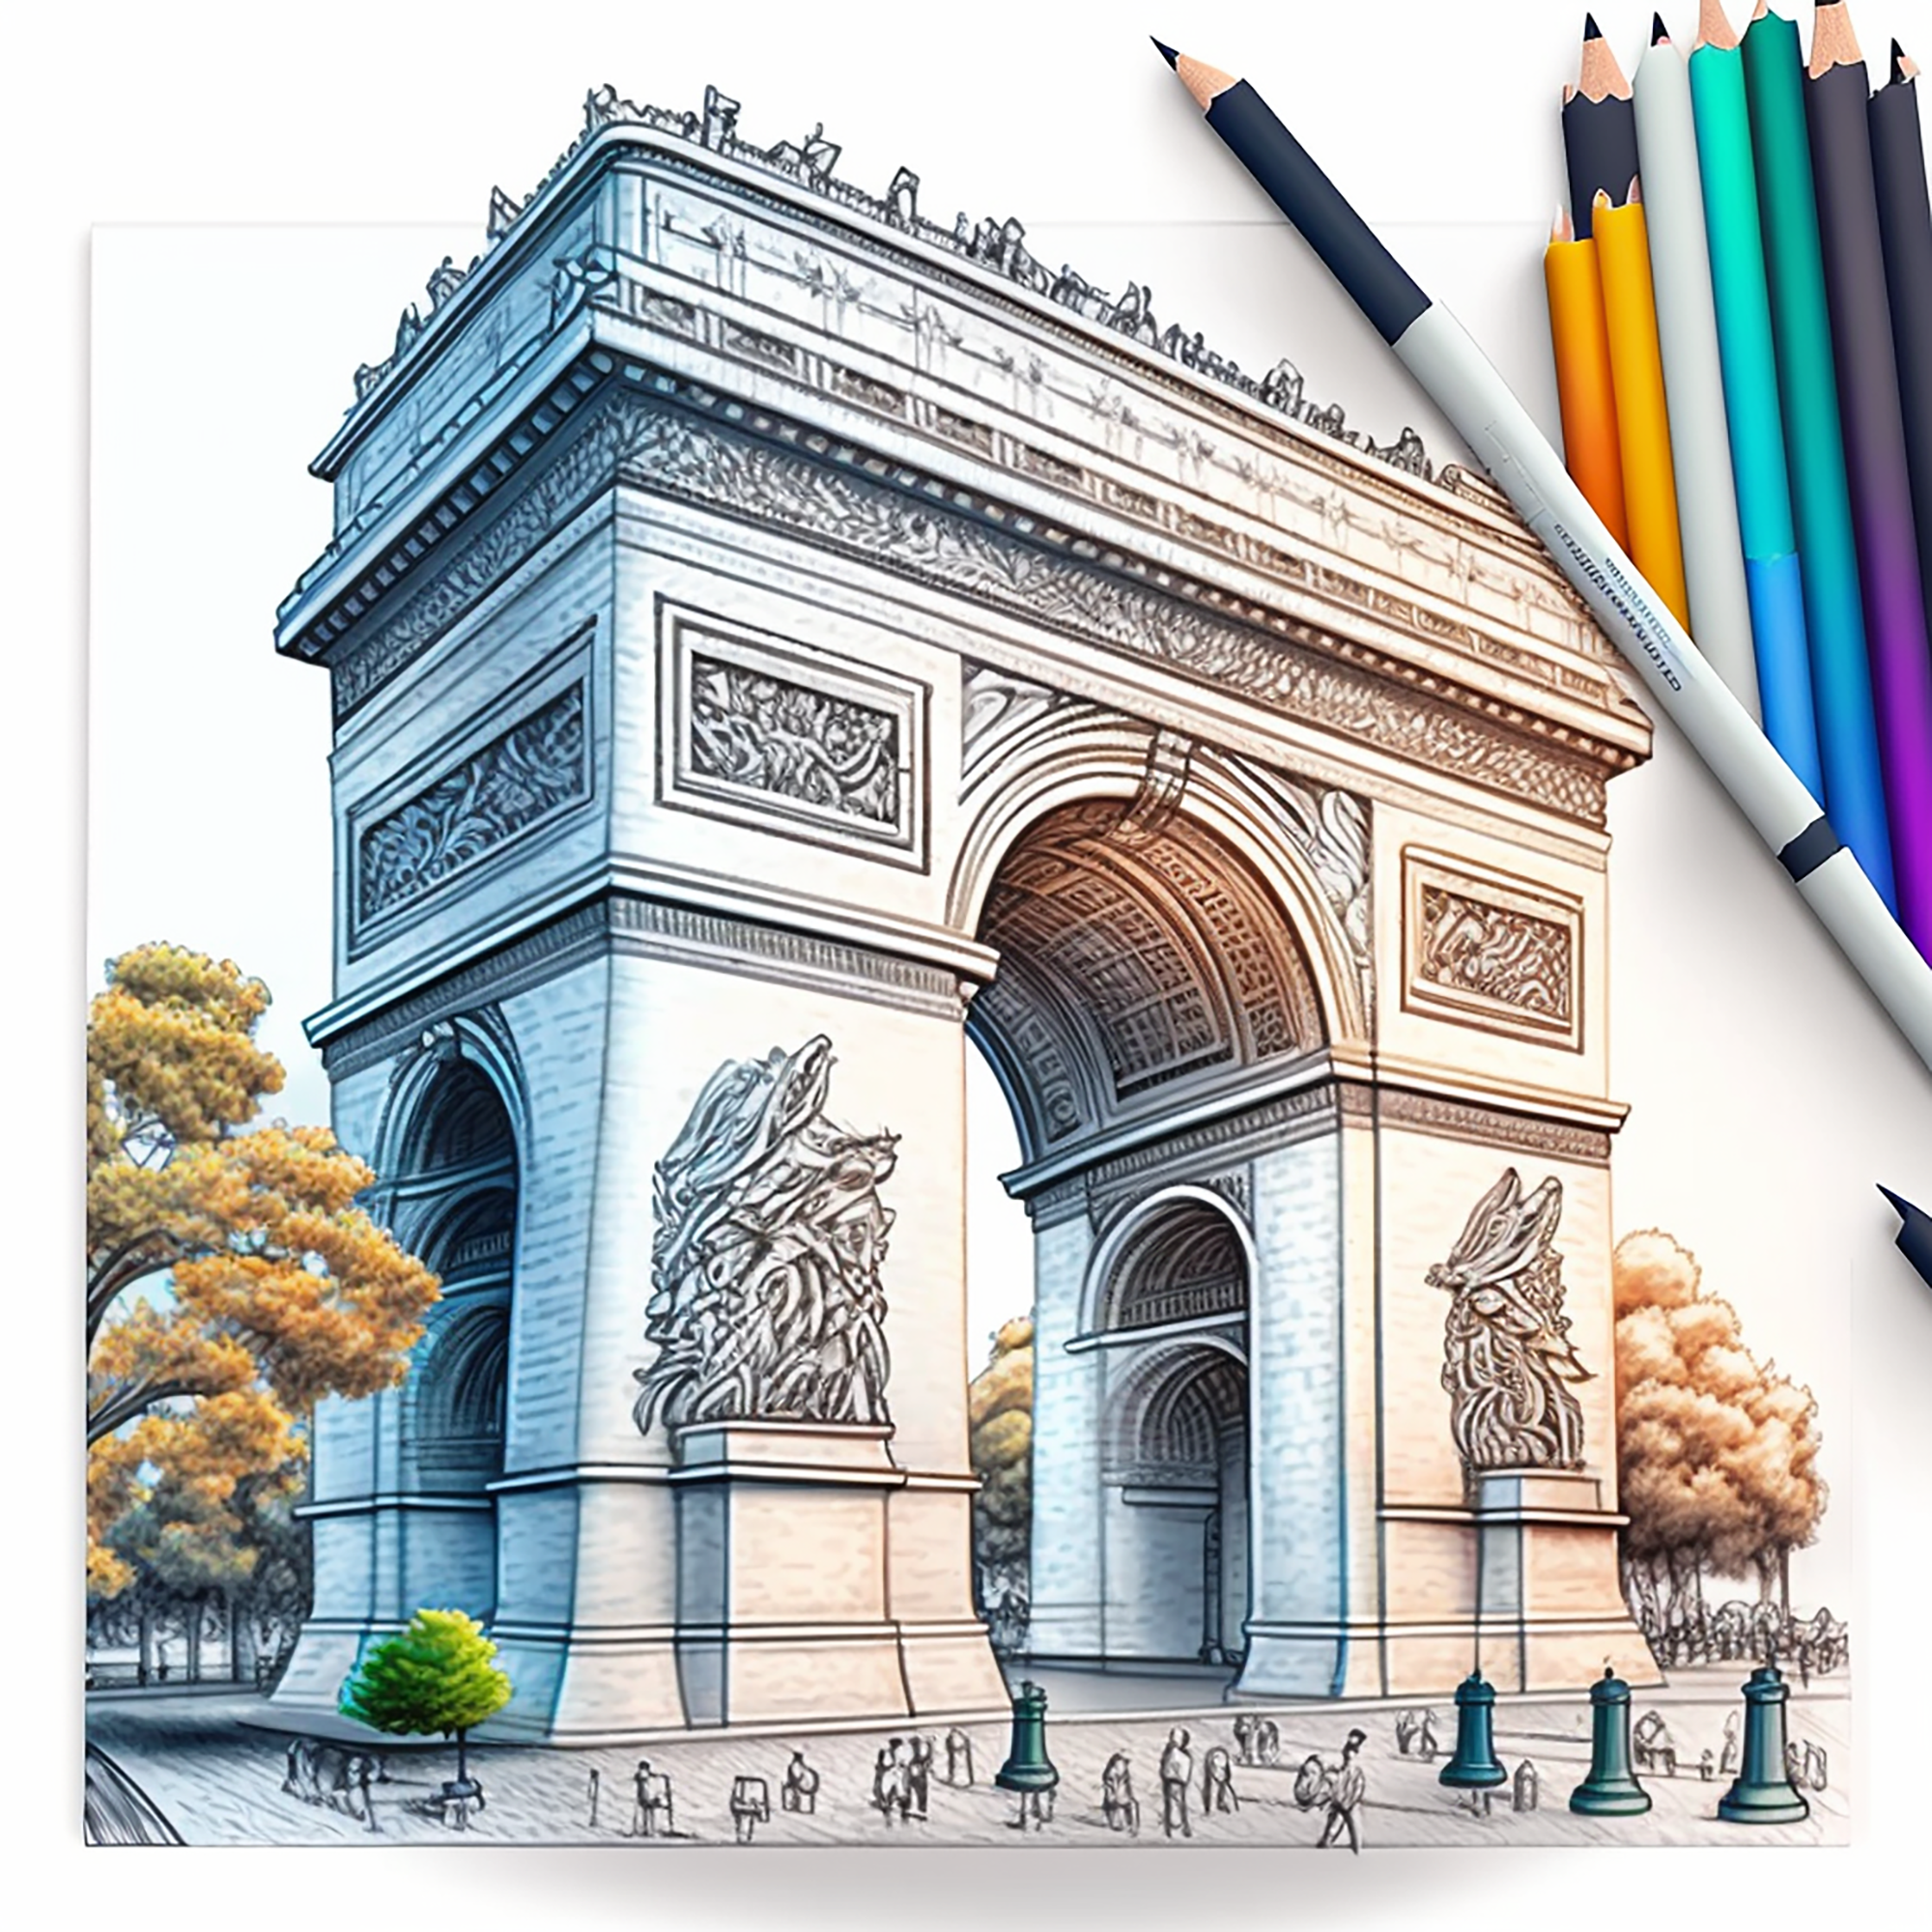 3301-The Arc De triomphe in Paris France, coloring book